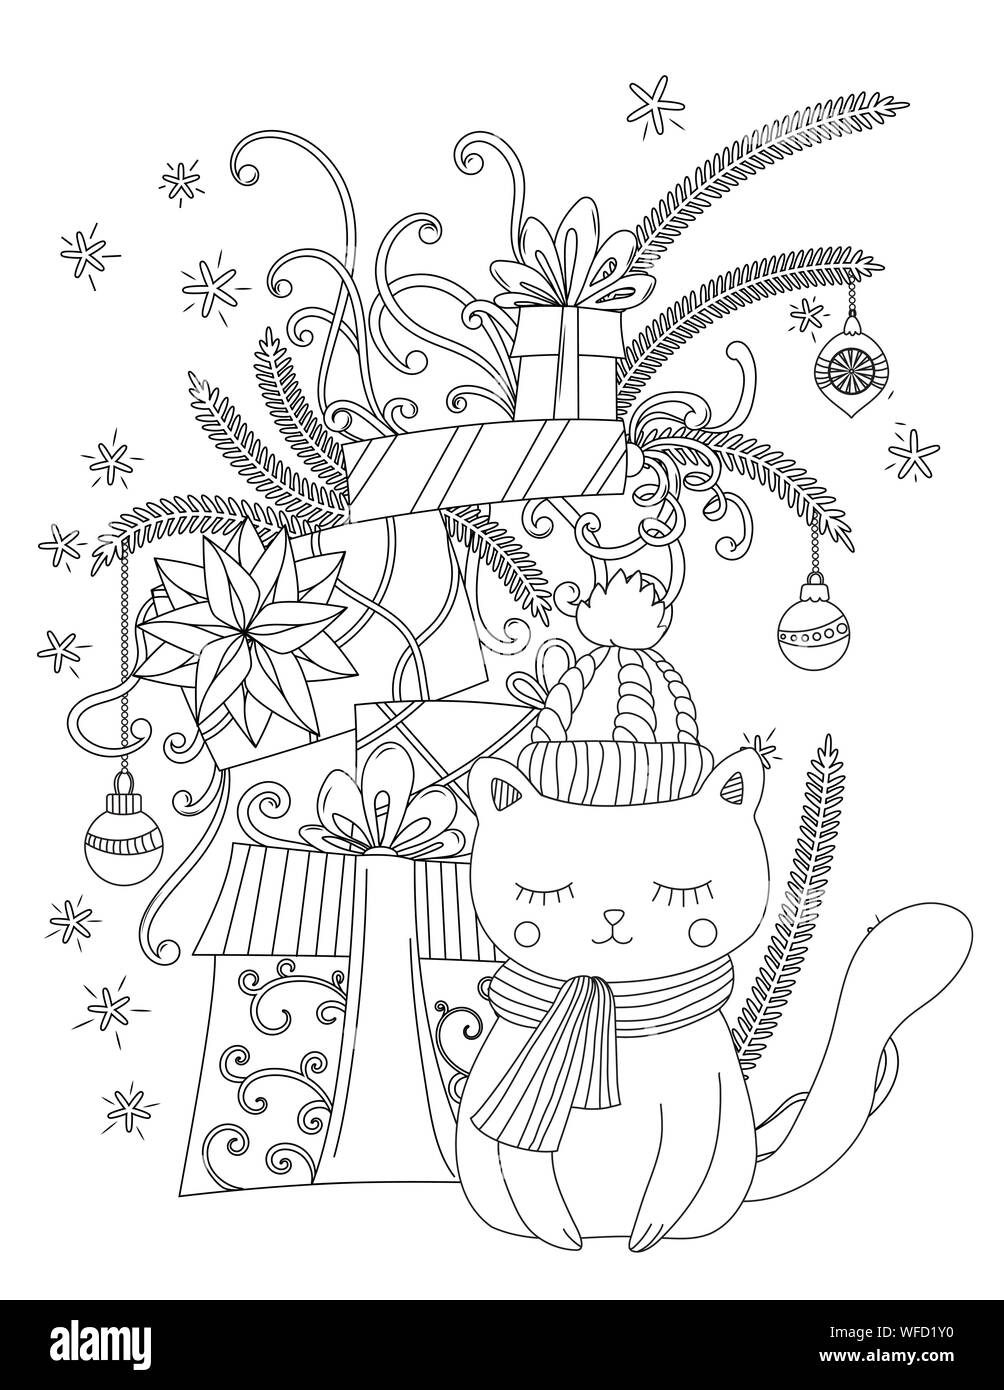 Weihnachten Malseite für Kinder und Erwachsene. Süße Katze mit Schal und Mütze gestrickt. Stapel von Urlaub präsentiert. Hand Vector Illustration gezeichnet. Stock Vektor